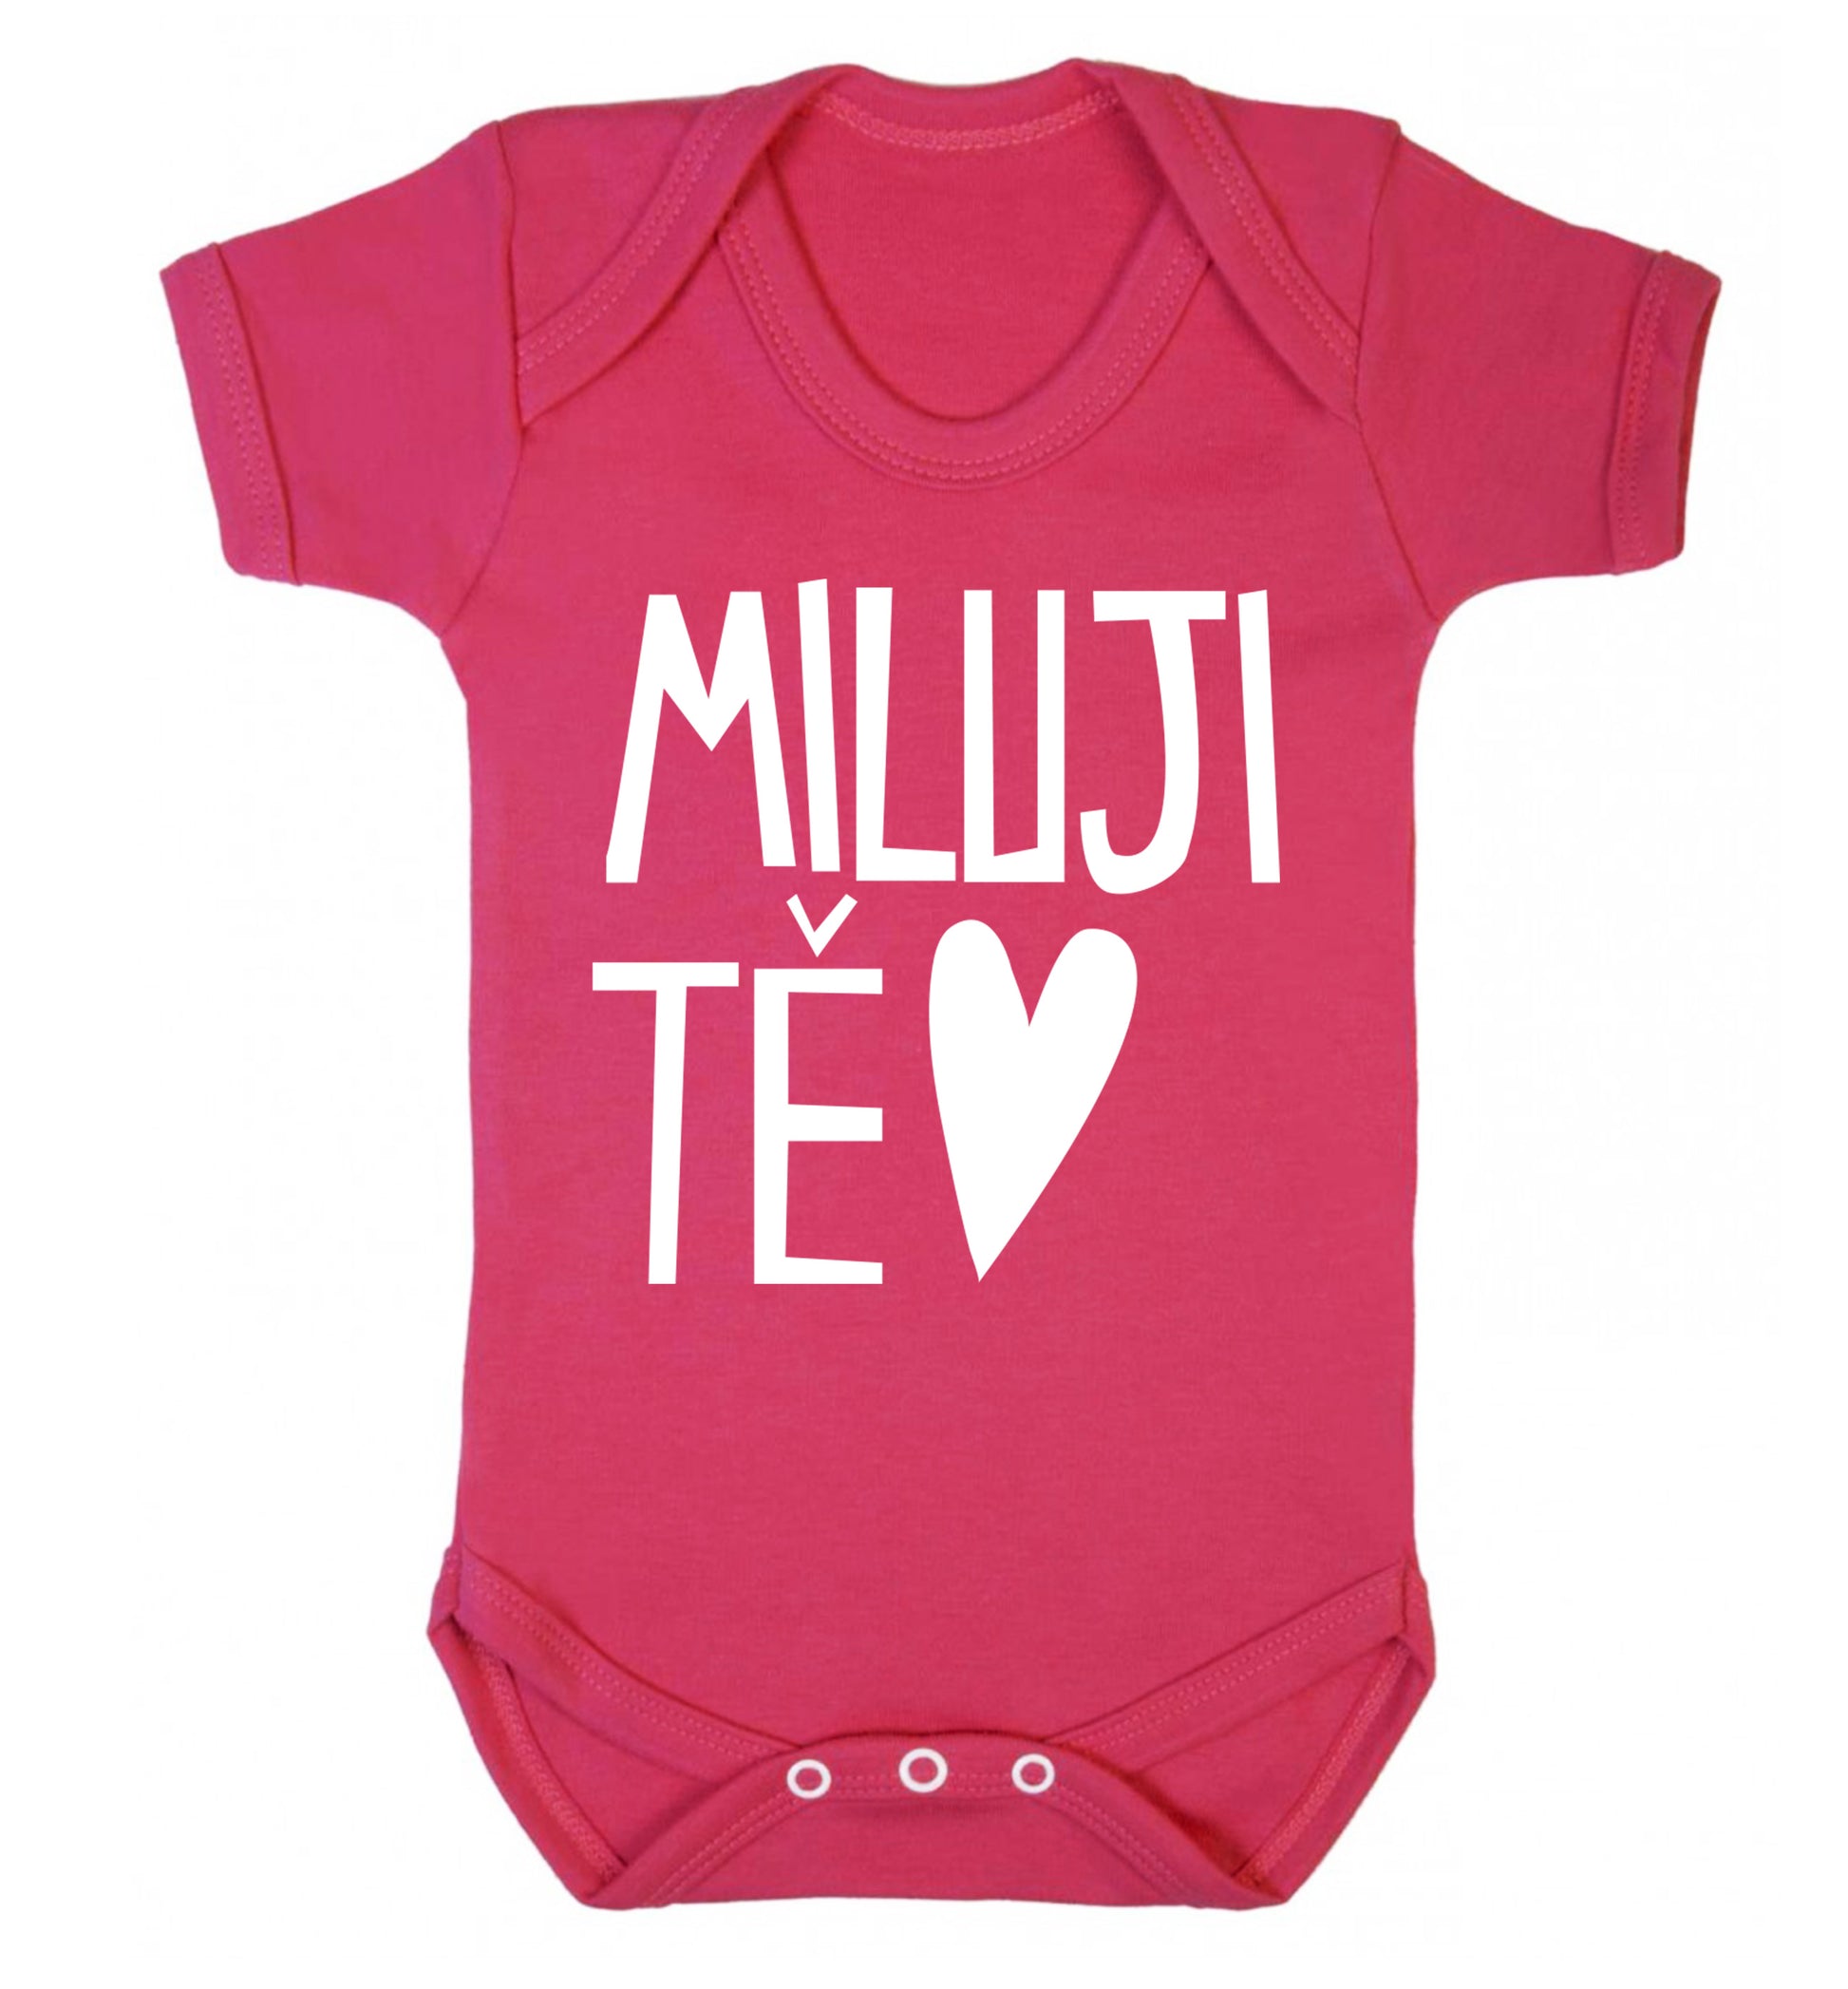 Miluji T_ - I love you Baby Vest dark pink 18-24 months